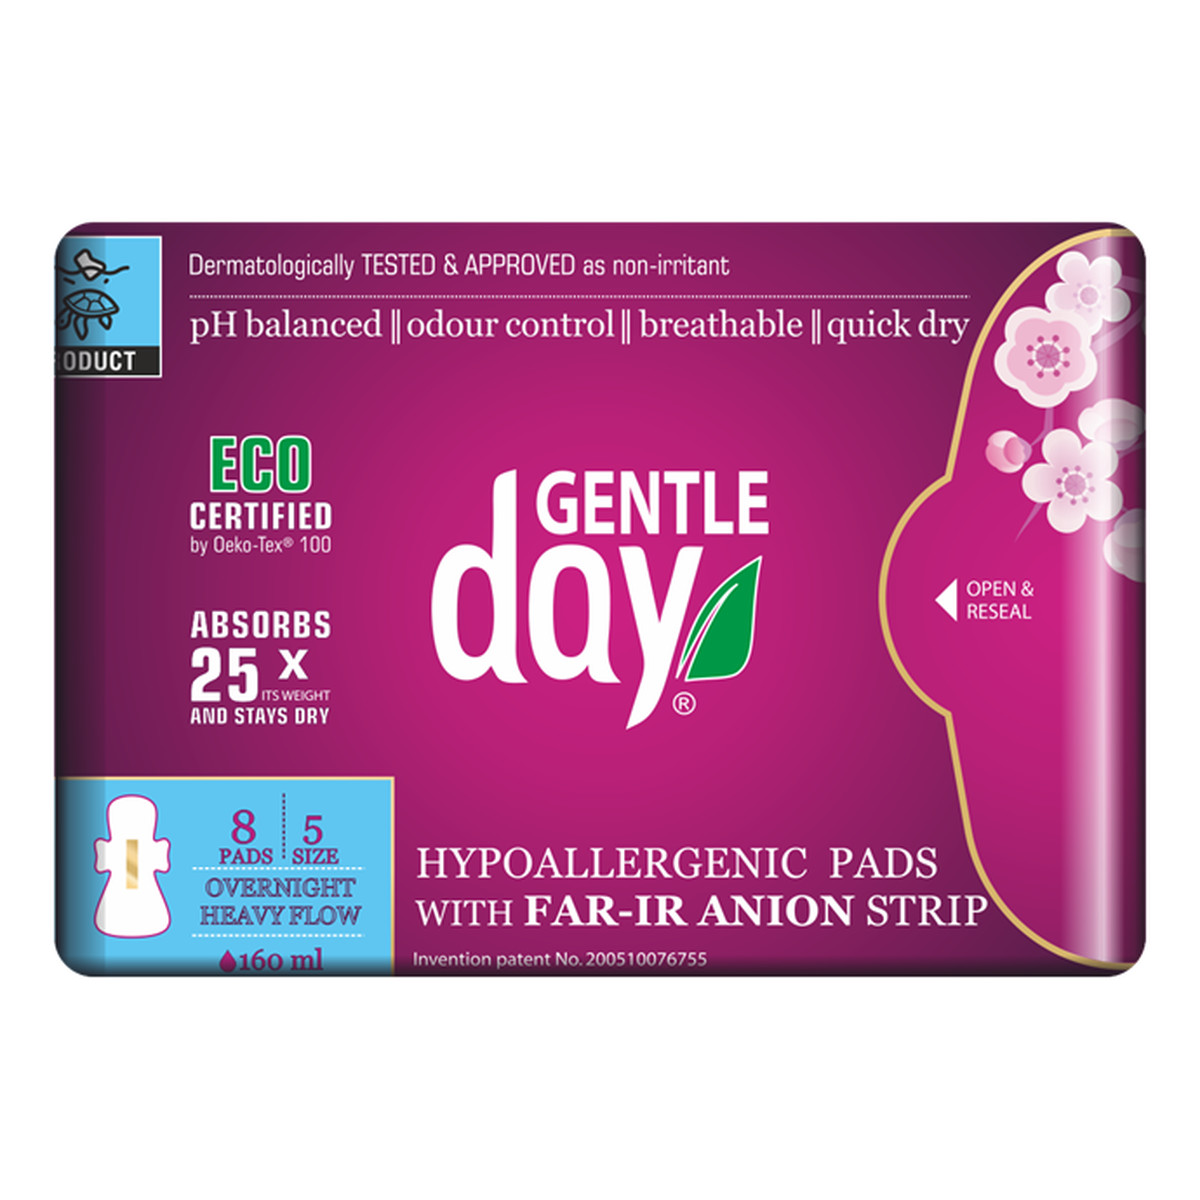 Gentle Day podpaski higieniczne na noc z paskiem anionowym 8szt